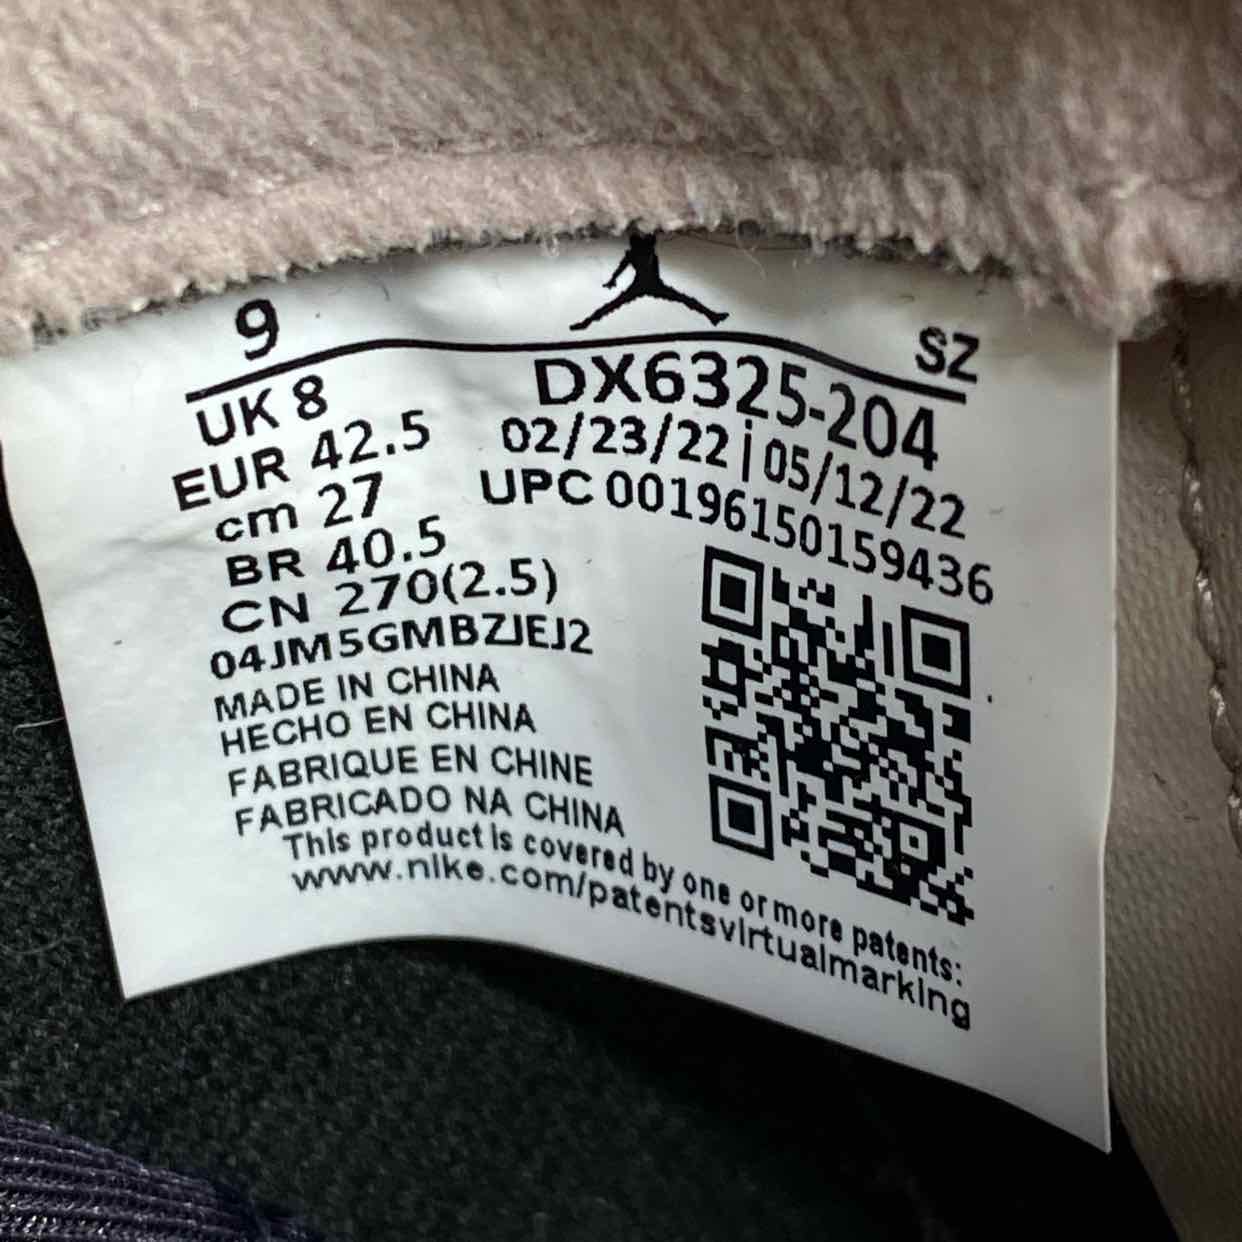 Air Jordan 5 Retro Low "Psg" 2022 Used Size 9